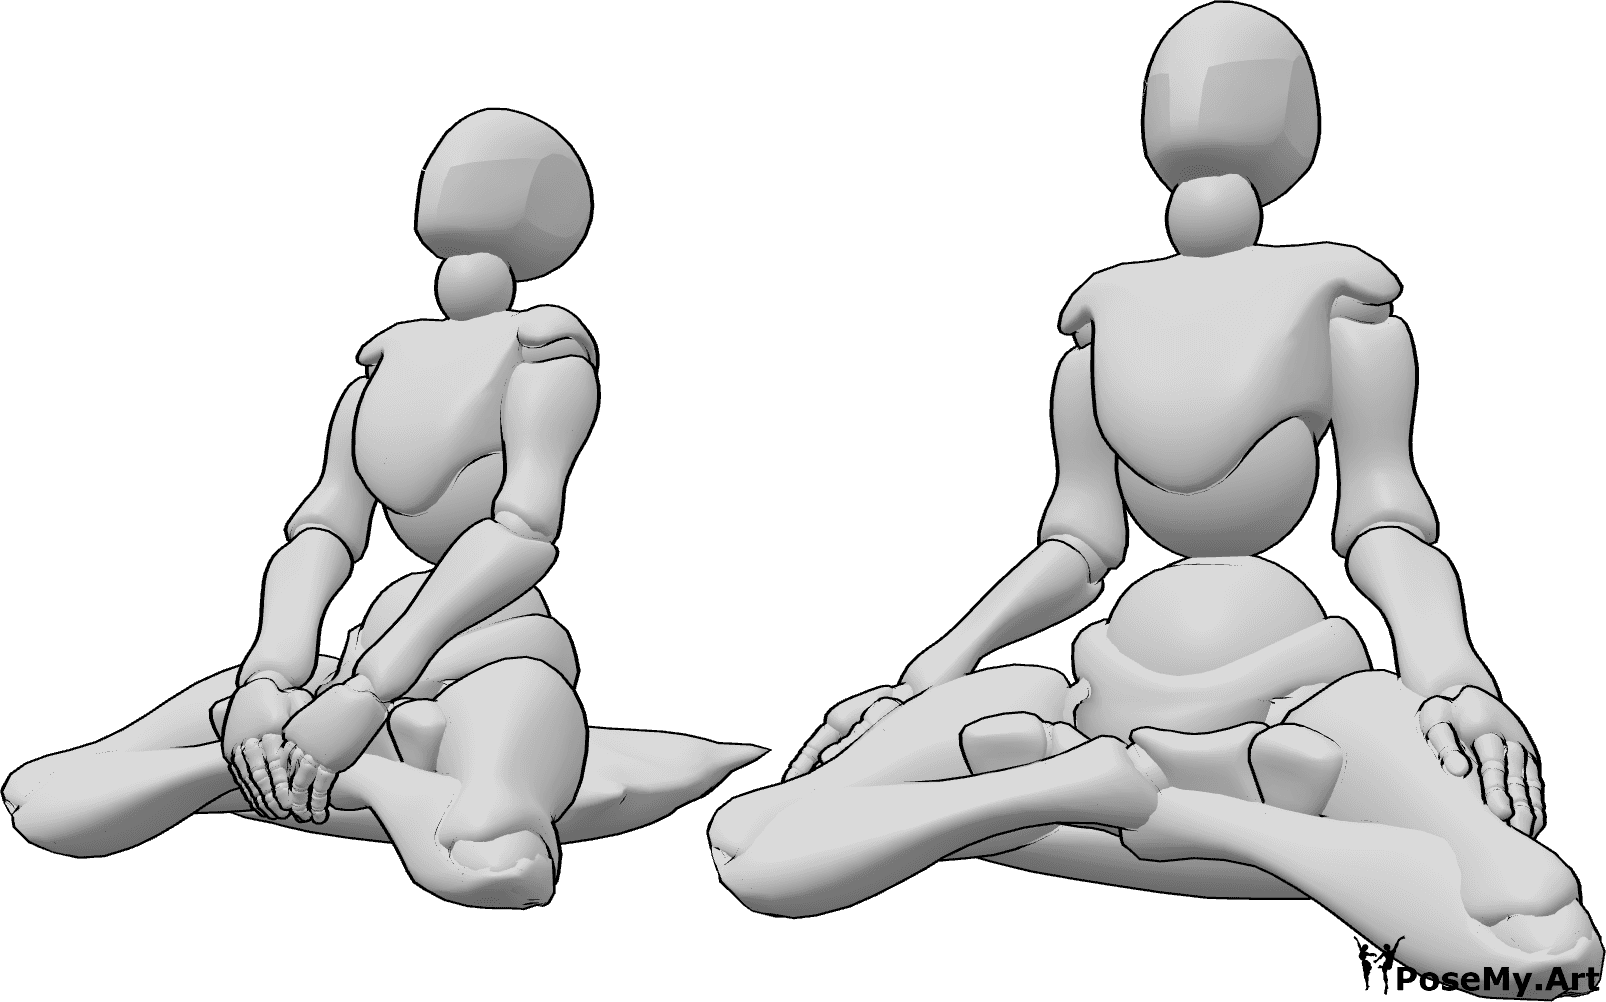 Posen-Referenz- Zwei Frauen in Meditationspose - Zwei Frauen meditieren, sie sitzen mit den Knien auf dem Boden und wenden ihr Gesicht nach oben.